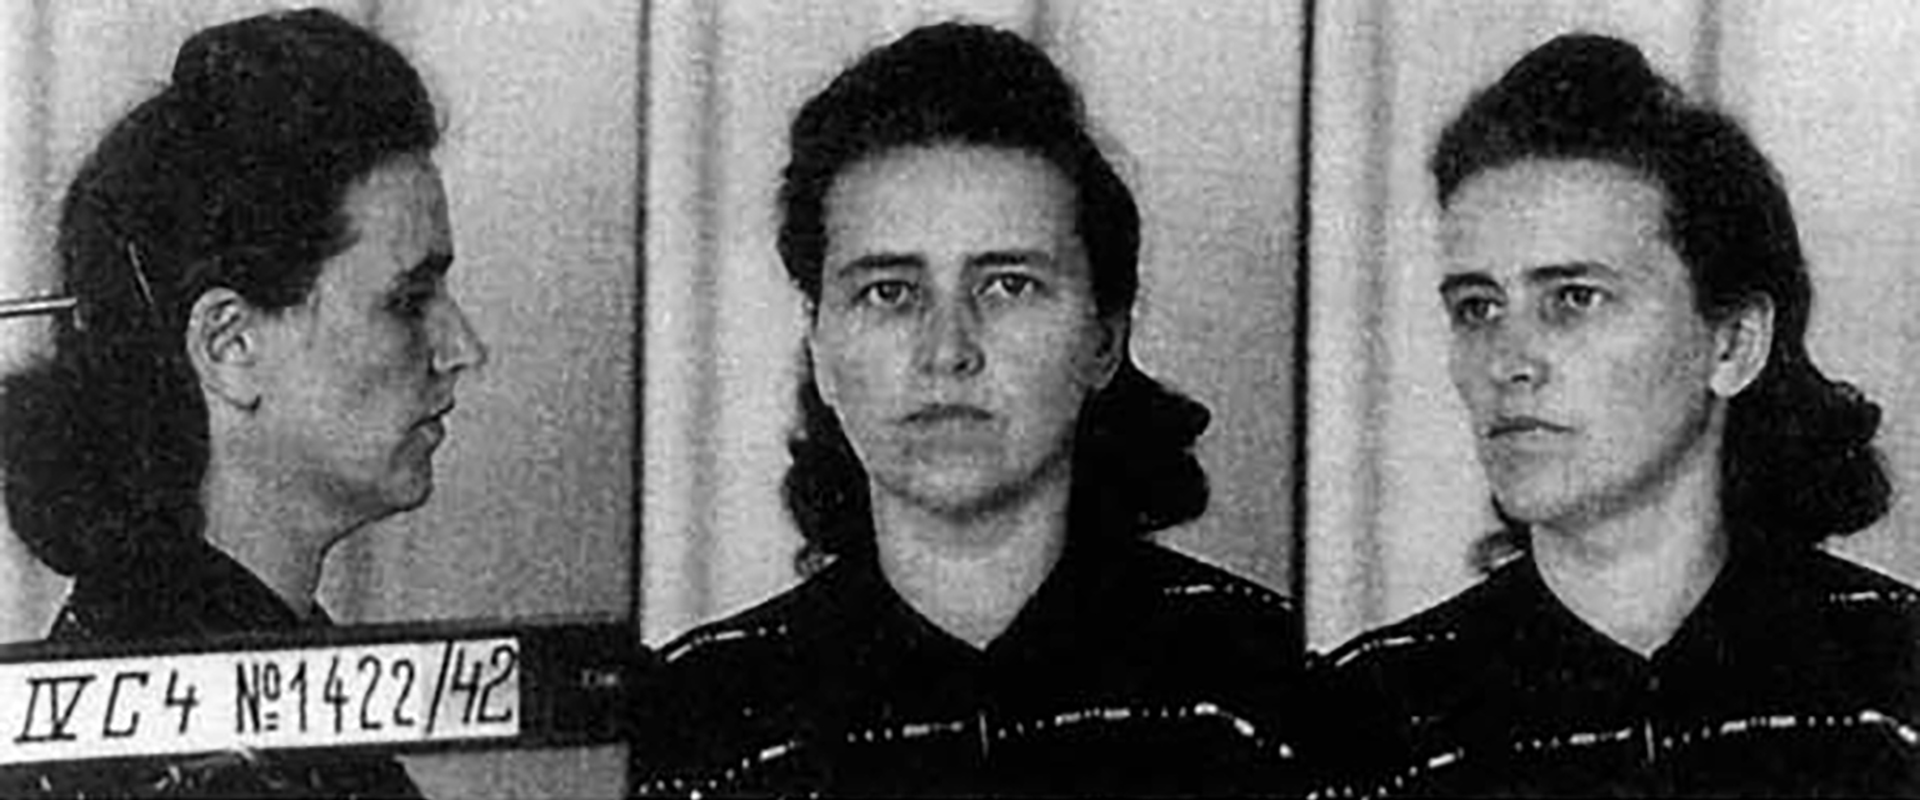 Las fotografías del legajo de la Gestapo tras la detención de Elise Hampel. La pareja durante dos años repartió postales en Berlín críticas al nazismo y sus jerarcas. La Gestapo los buscó con denuedo